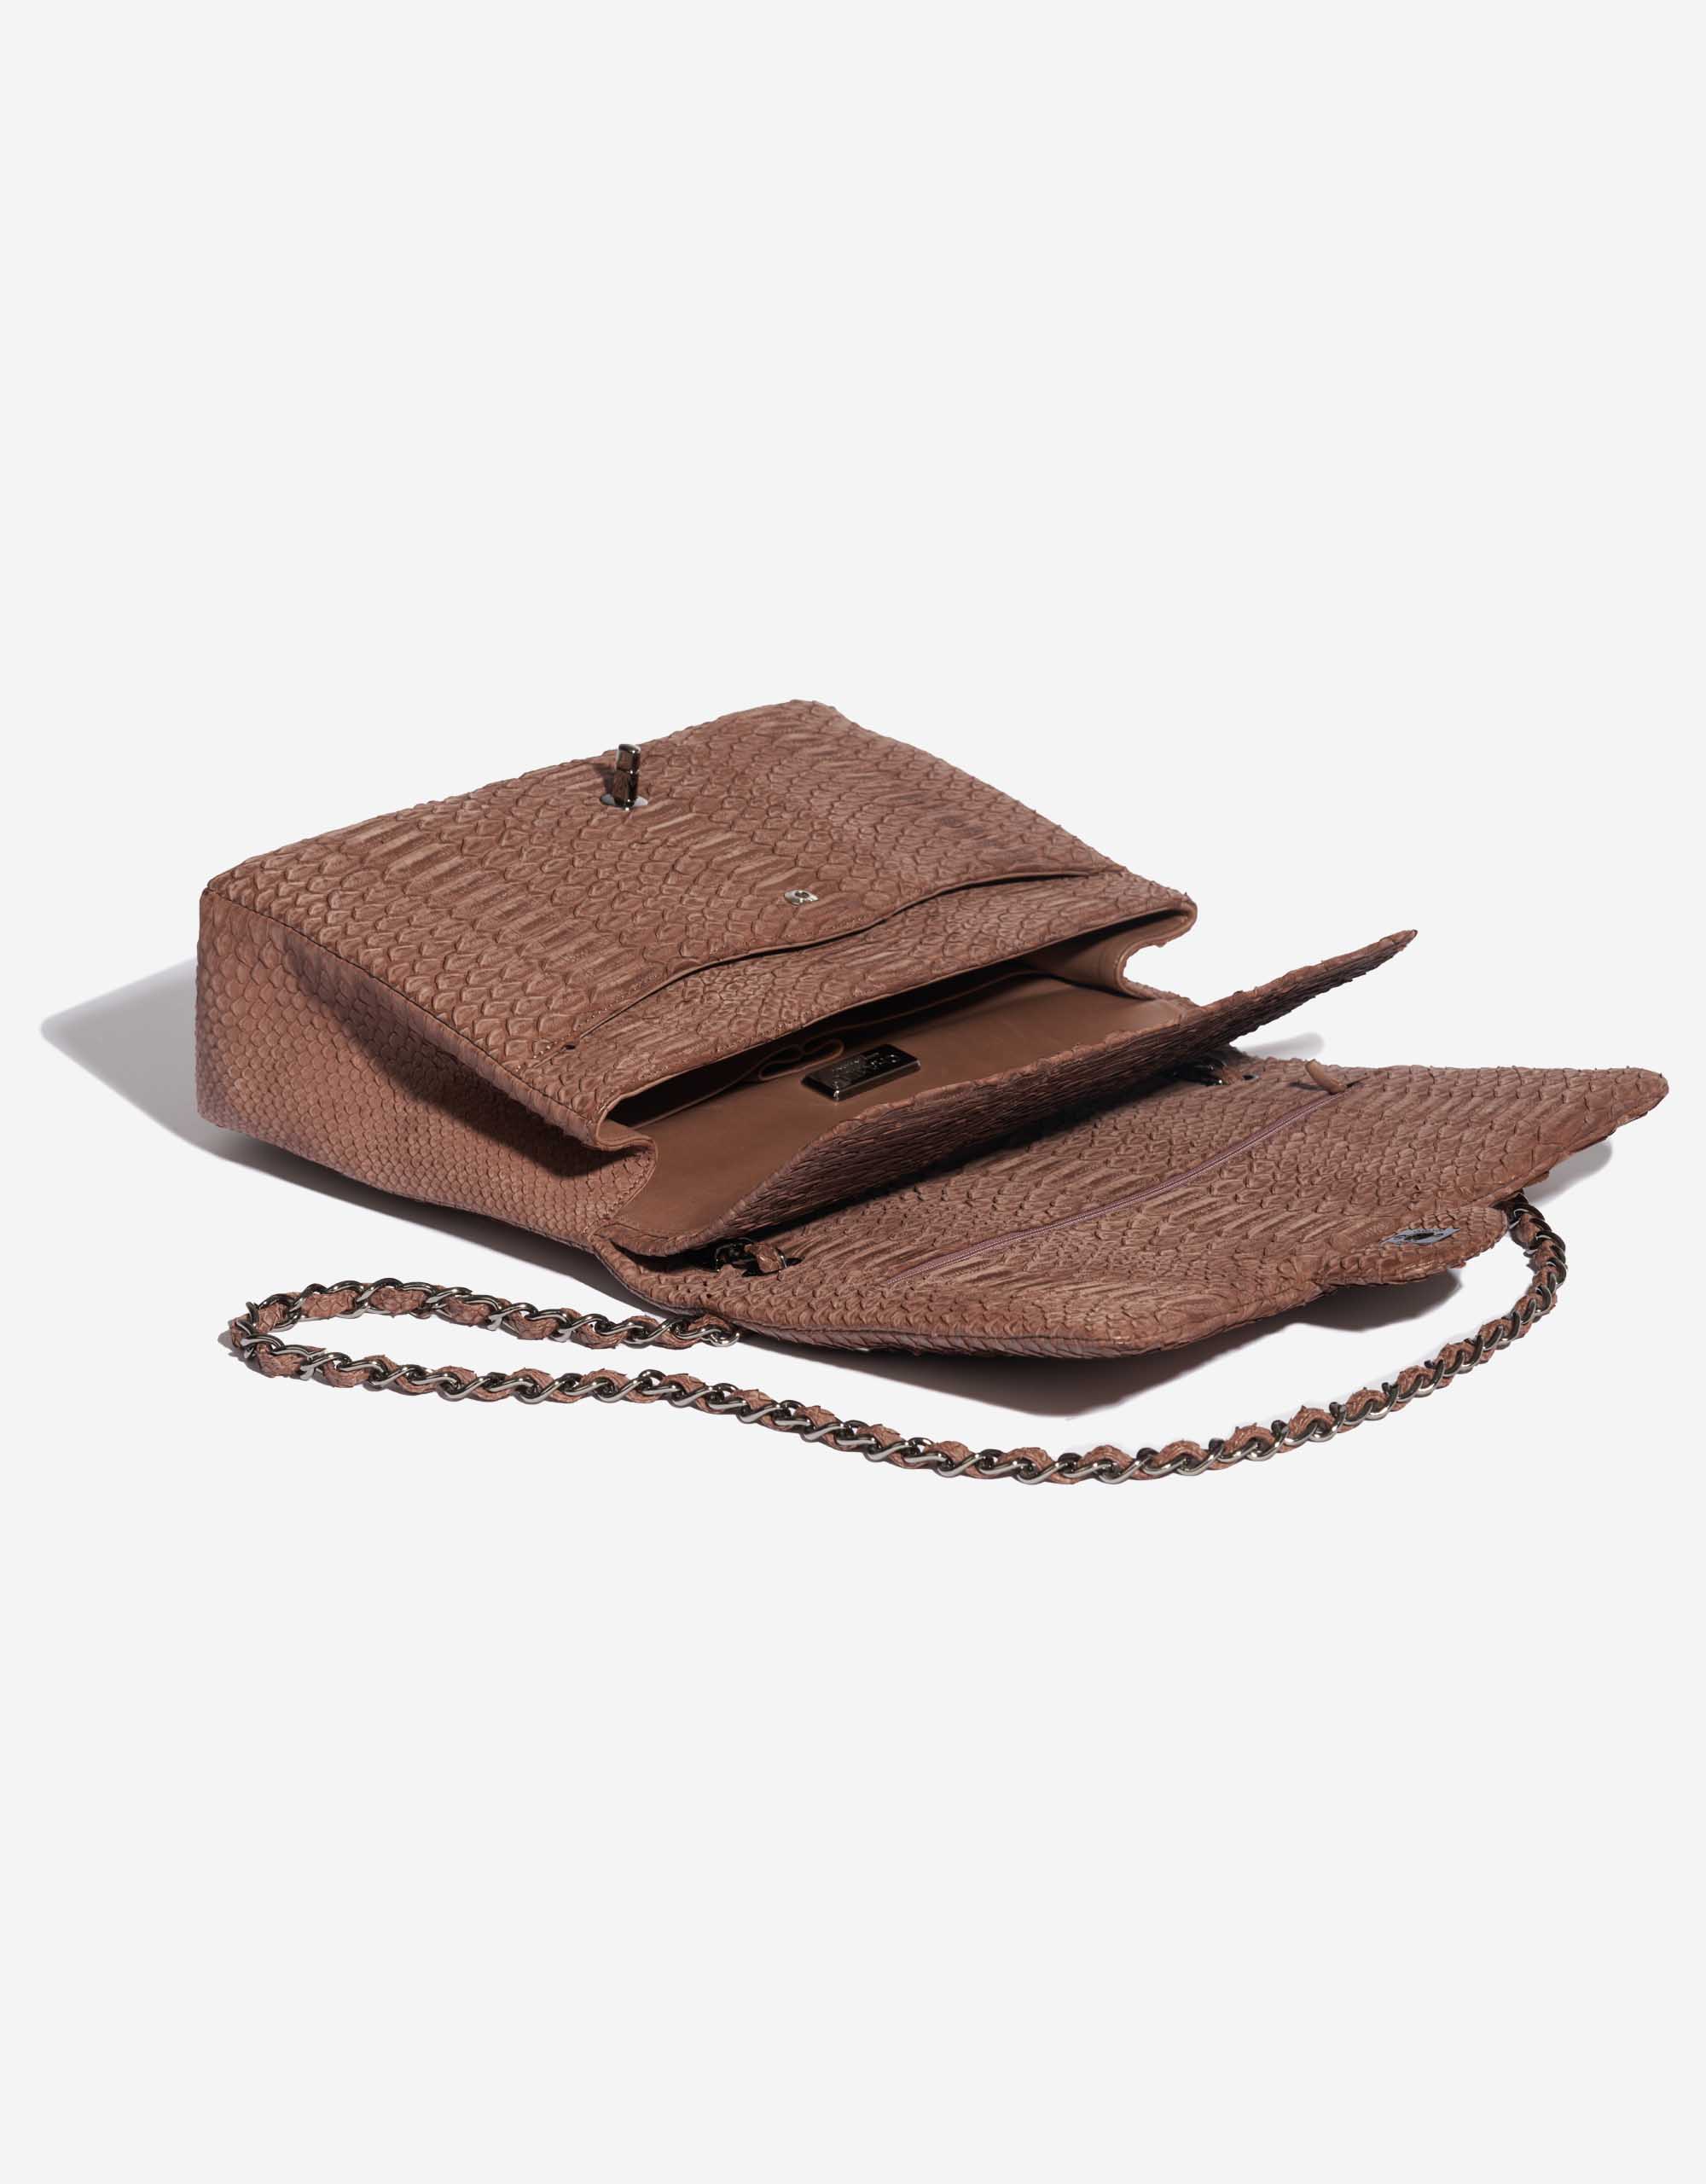 Pre-owned Chanel Tasche Timeless Maxi Python Brown Brown Inside | Verkaufen Sie Ihre Designer-Tasche auf Saclab.com